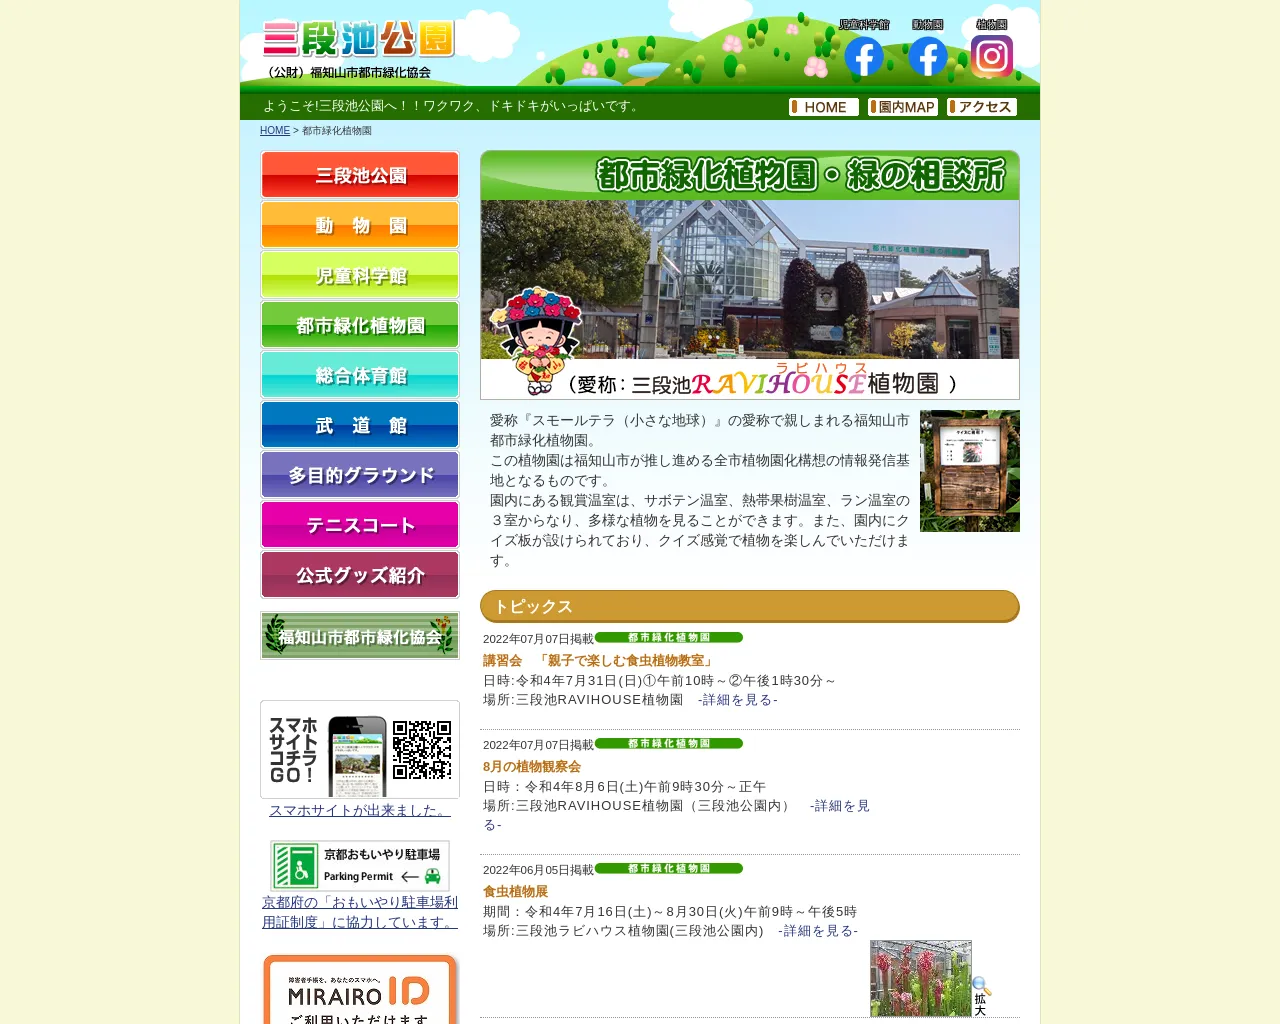 三段池ラビハウス 植物園(福知山市都市緑化植物園) site